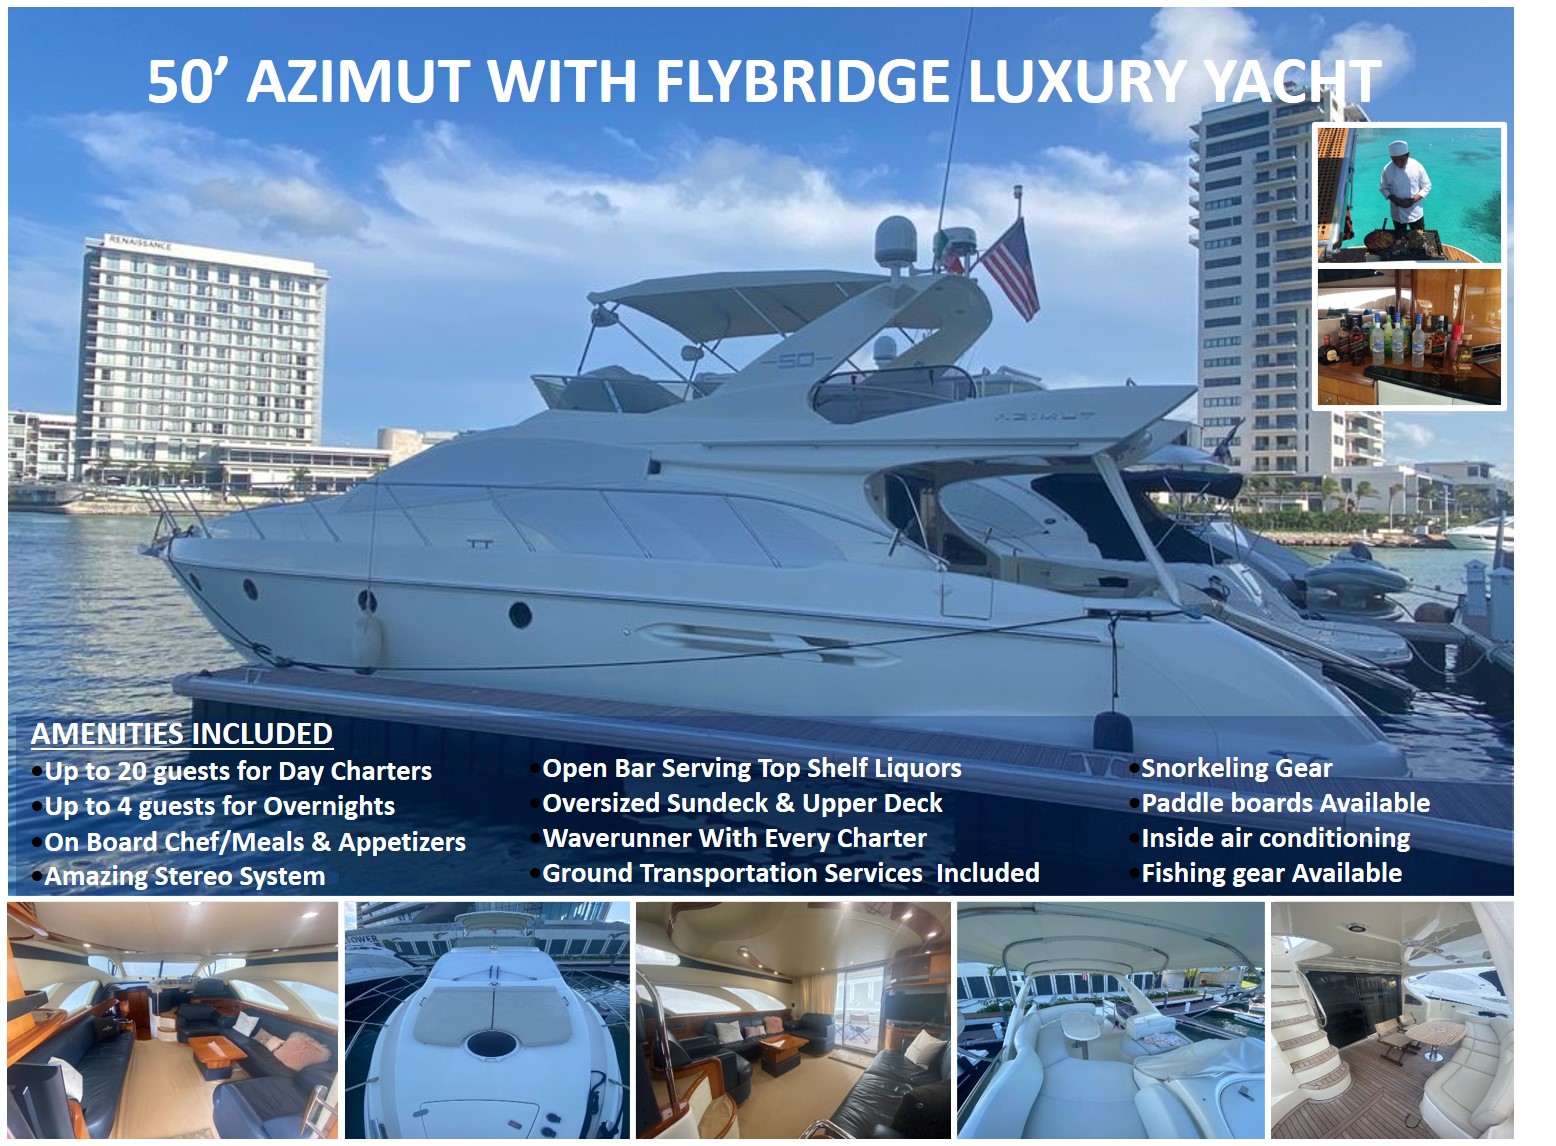 50’ Azimut With Flybridge Luxury Yacht